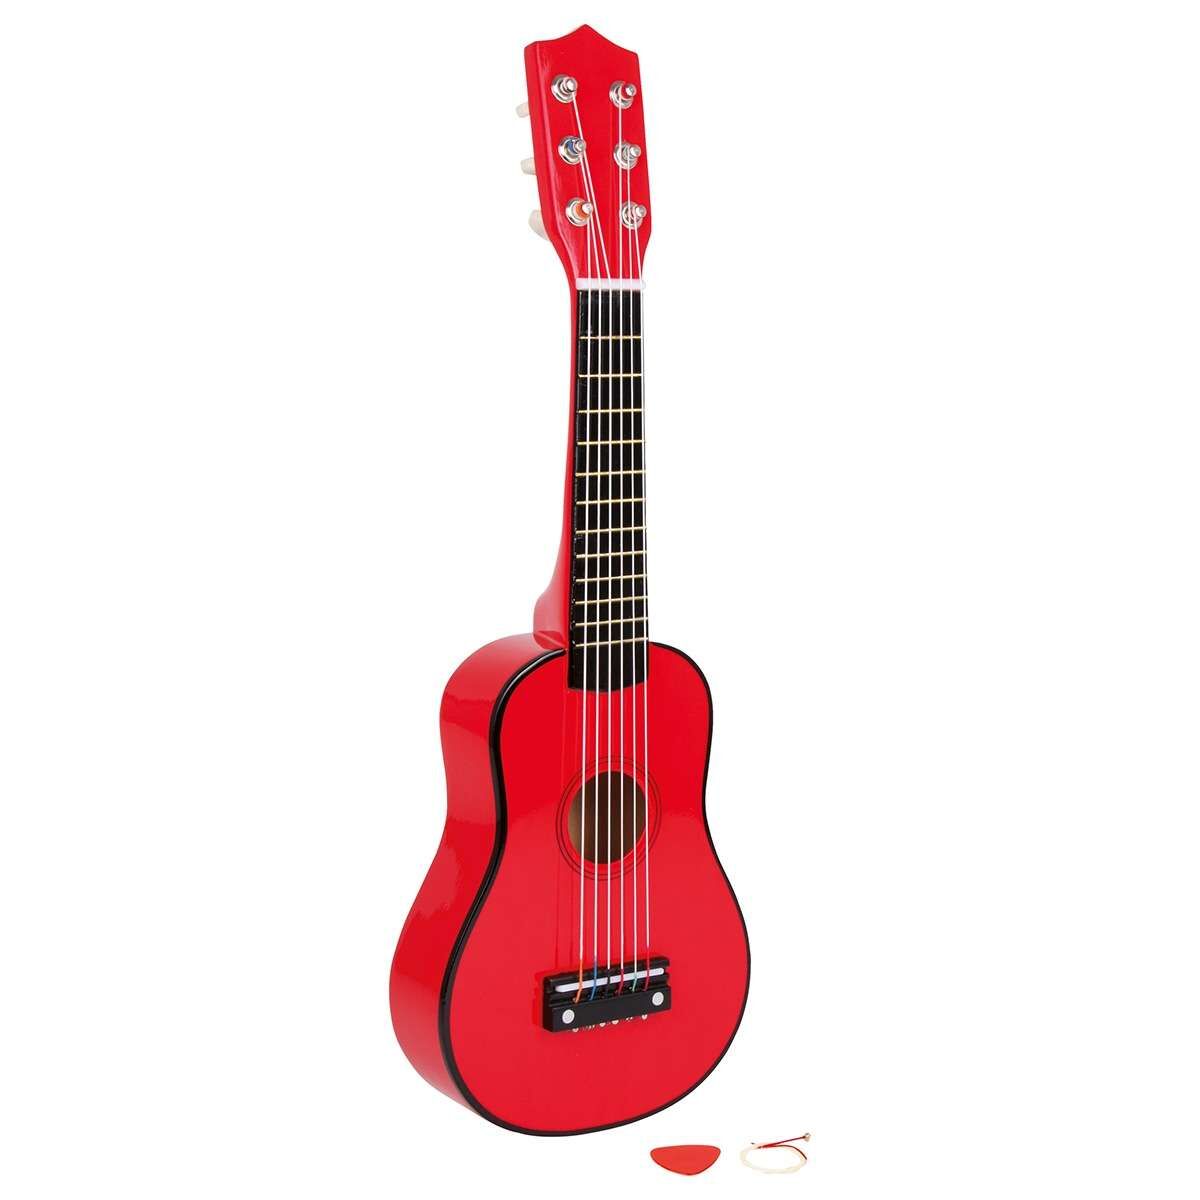 21“ Kinder Gitarre Spielzeug Musikinstrument Kinder Geschenk Y71 